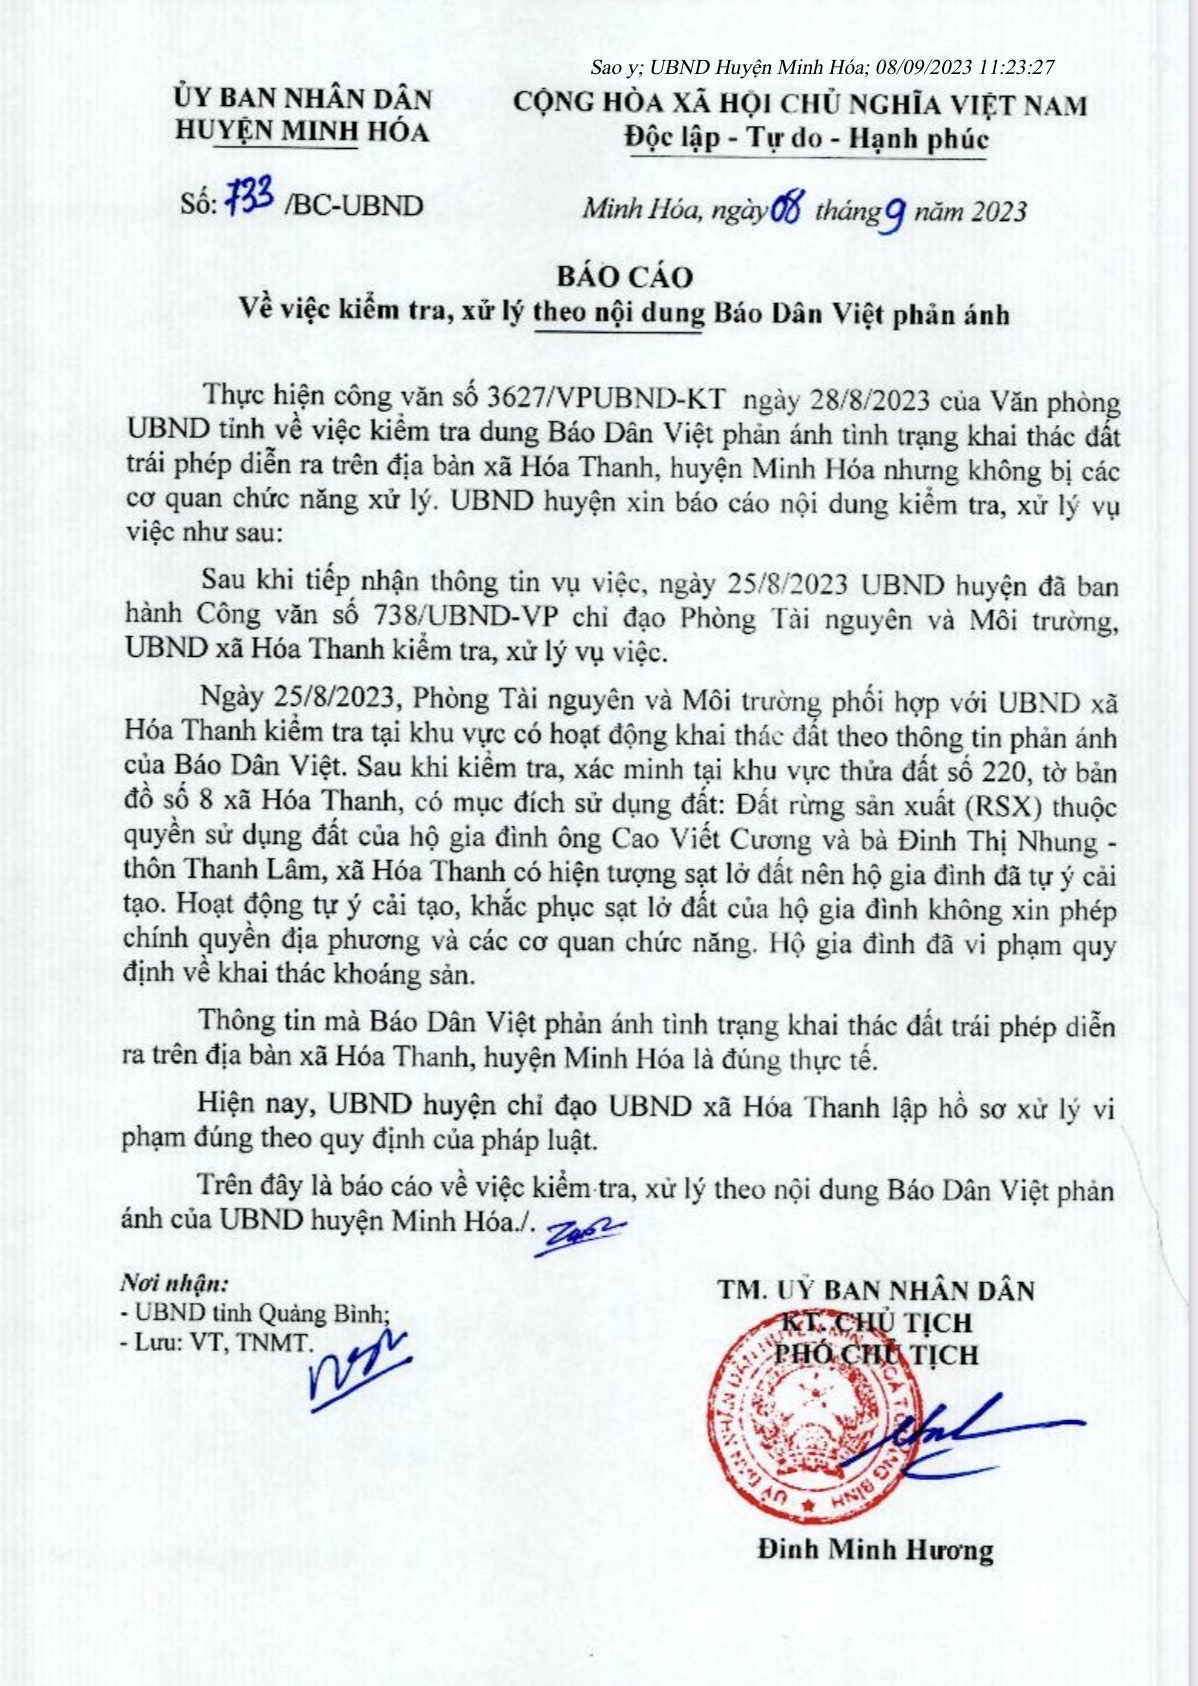 Khai thác đất lậu cả ngày, đêm ở Quảng Bình: Báo Dân Việt phản ánh đúng, cần xét tới trách nhiệm chính quyền địa - Ảnh 1.